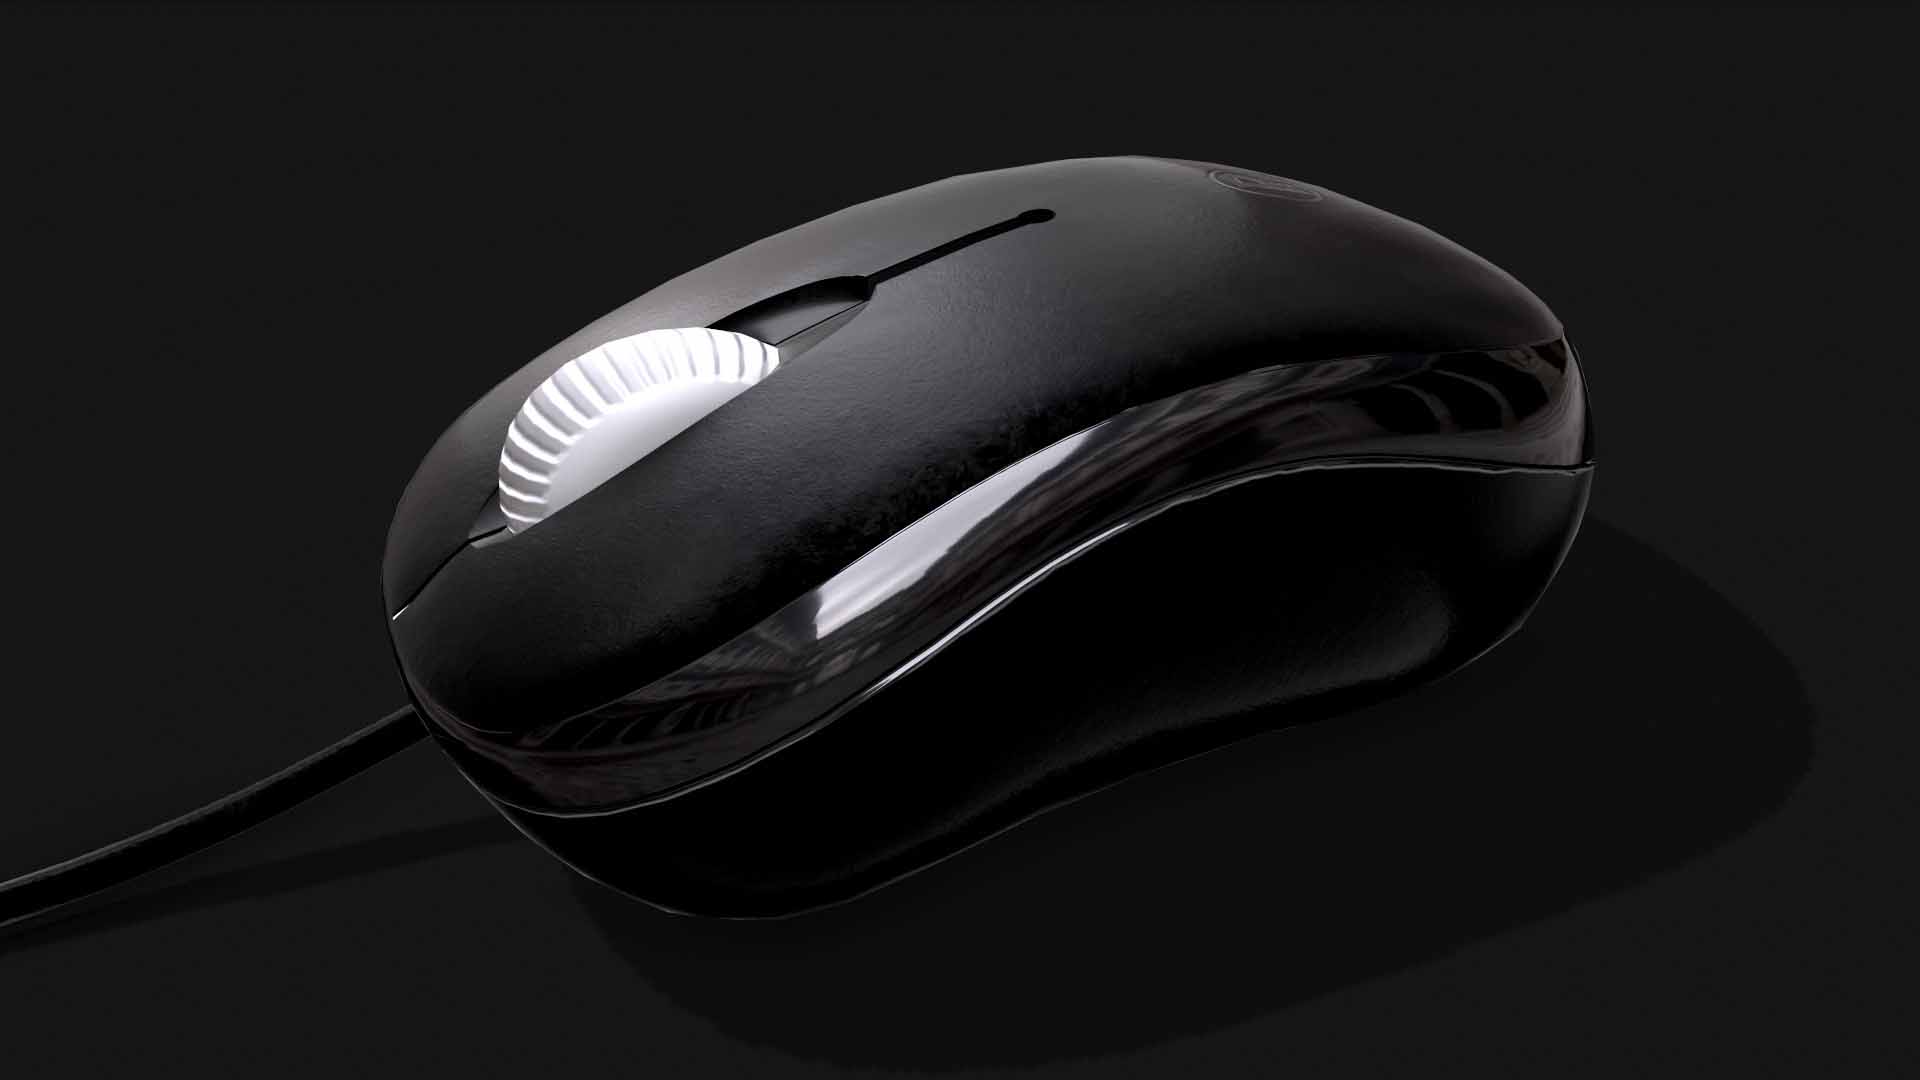 dark-side-office-mouse-pc-3d-pixelion8